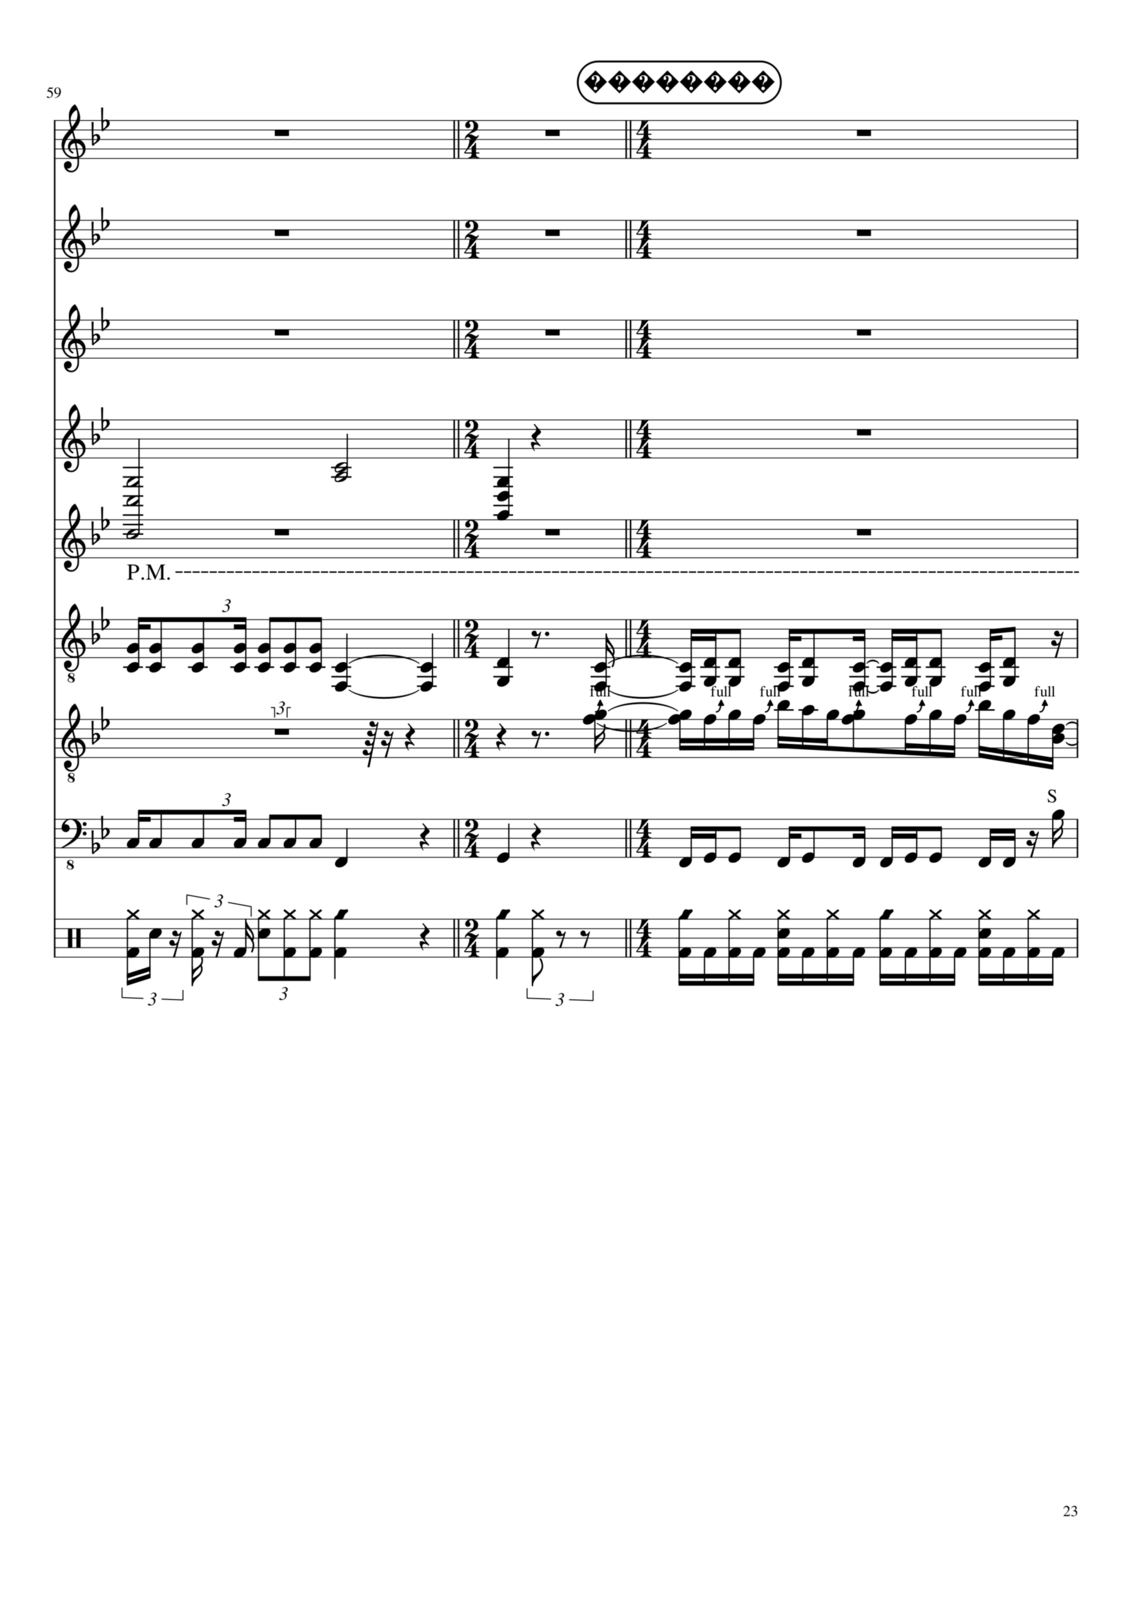 Vospominaniya o byiloy lyubvi slide, Image 15